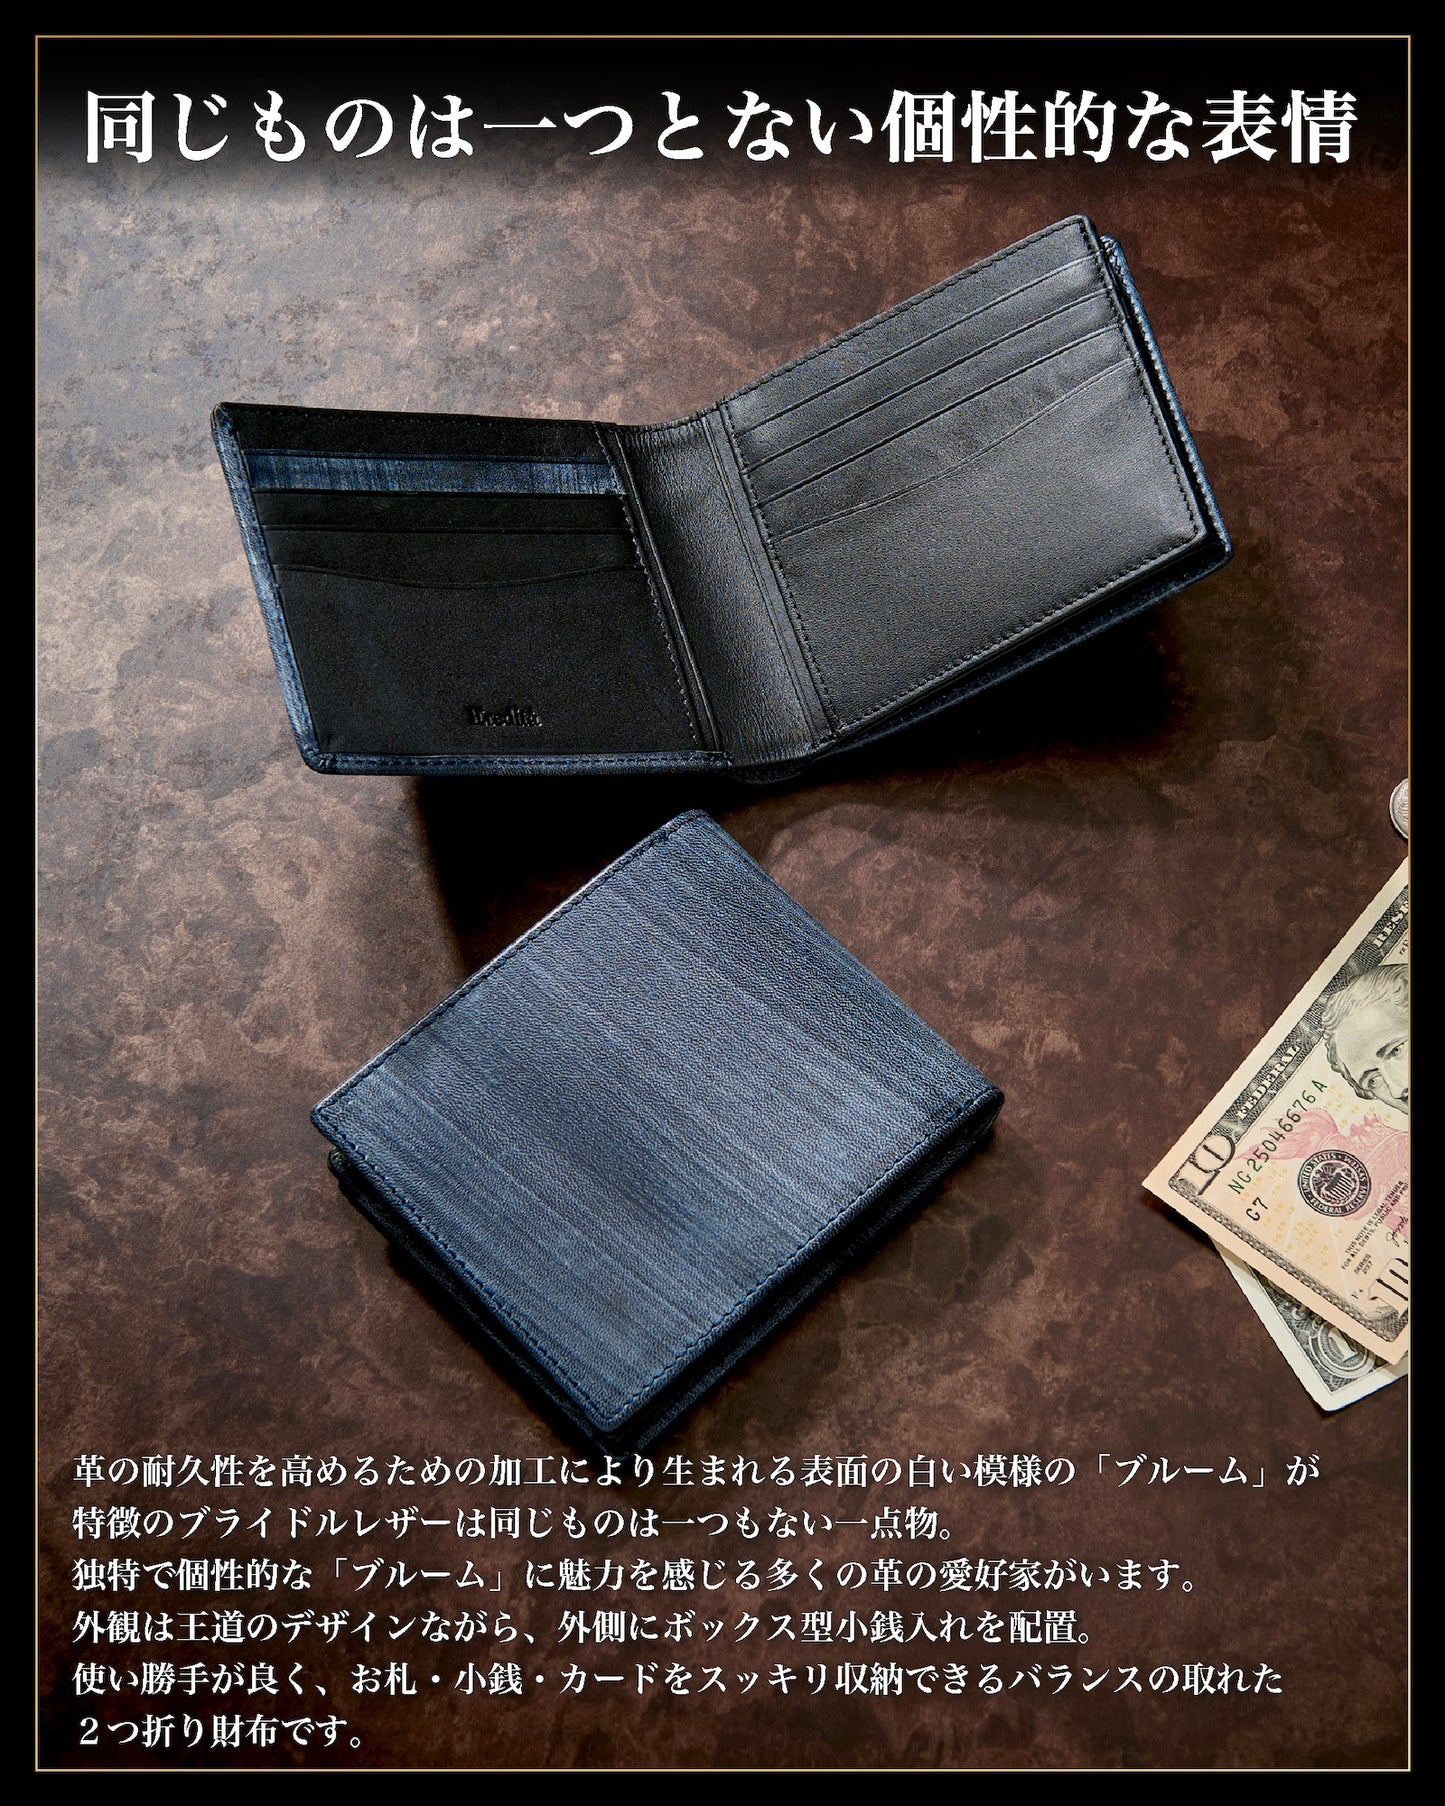 Eredita(エレディータ) ブライドルレザー 二つ折り財布 メンズ 外側小銭入れ 日本製 WL26